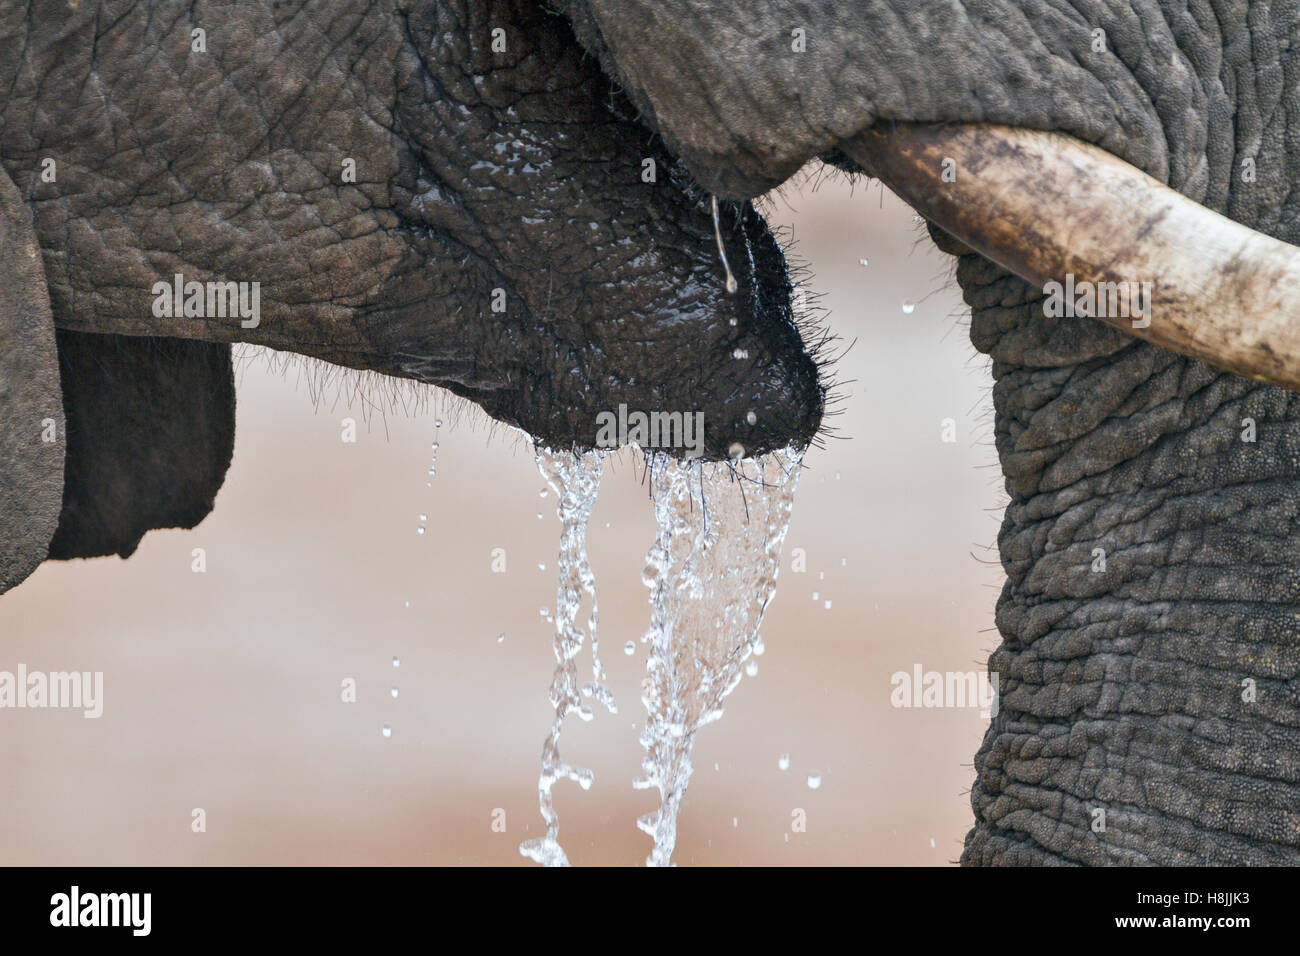 Teil einer Reihe von Bildern dokumentiert die komplexen sozialen Interaktionen des afrikanischen Elefanten, wenn sie zu trinken versammeln. Stockfoto